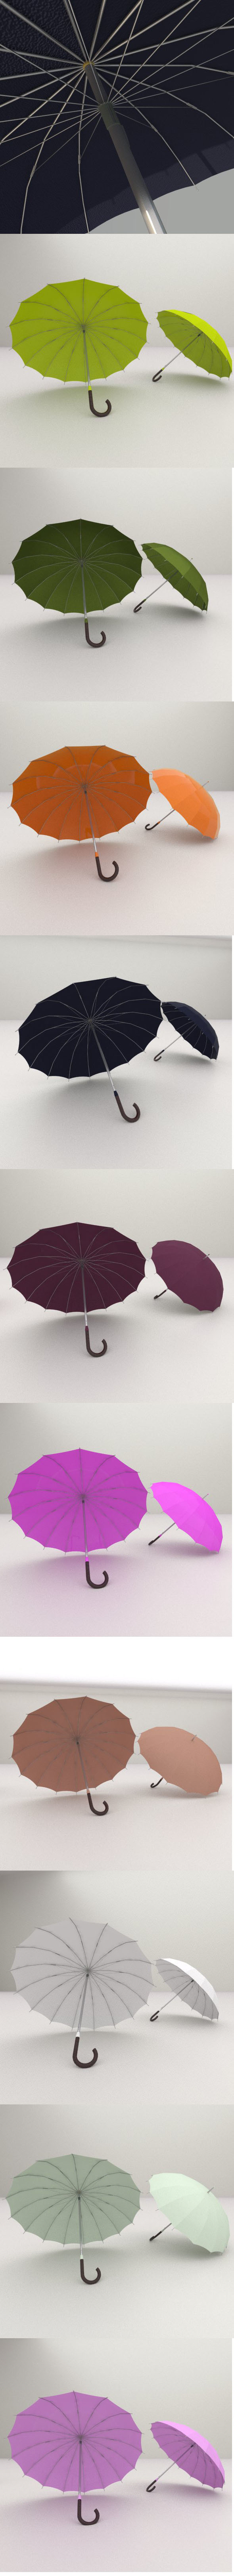 10 Umbrellaspackage - 3Docean 13626433